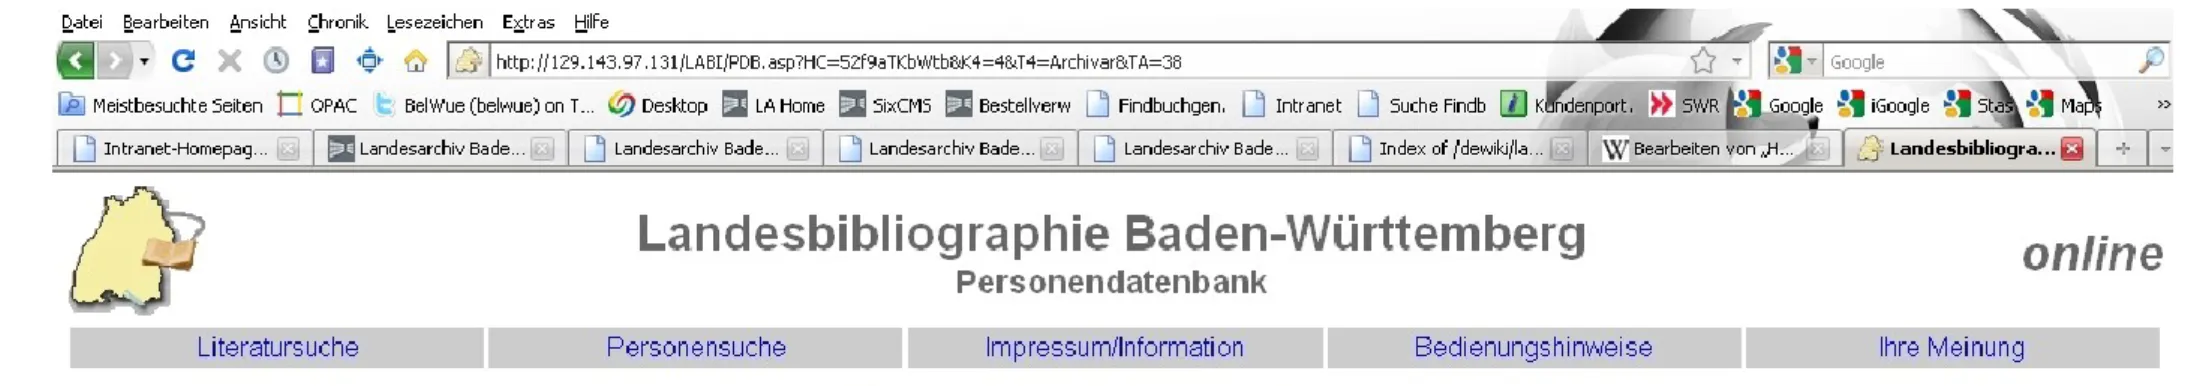 Abbildung 2: Fachverfahren Personendatenbank der Landesbibliographie Baden-Württemberg 